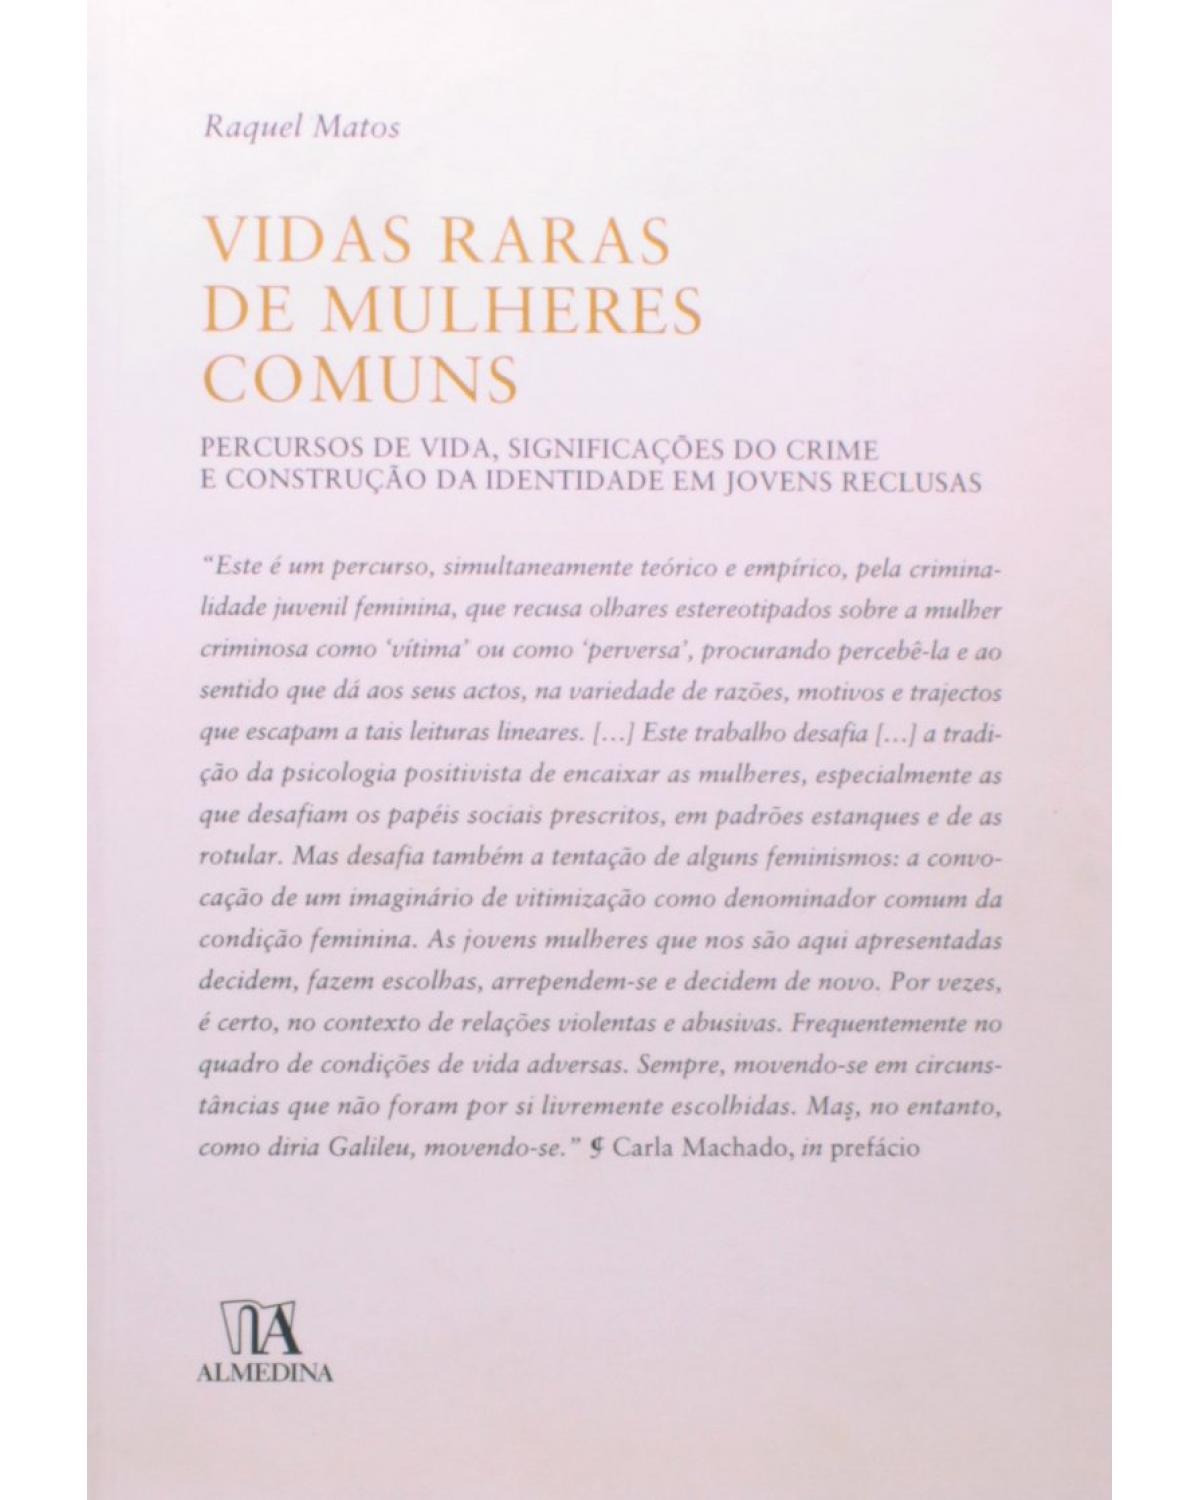 Vidas raras de mulheres comuns - percursos de vida, significações do crime e construção da identidade em jovens reclusas - 1ª Edição | 2008